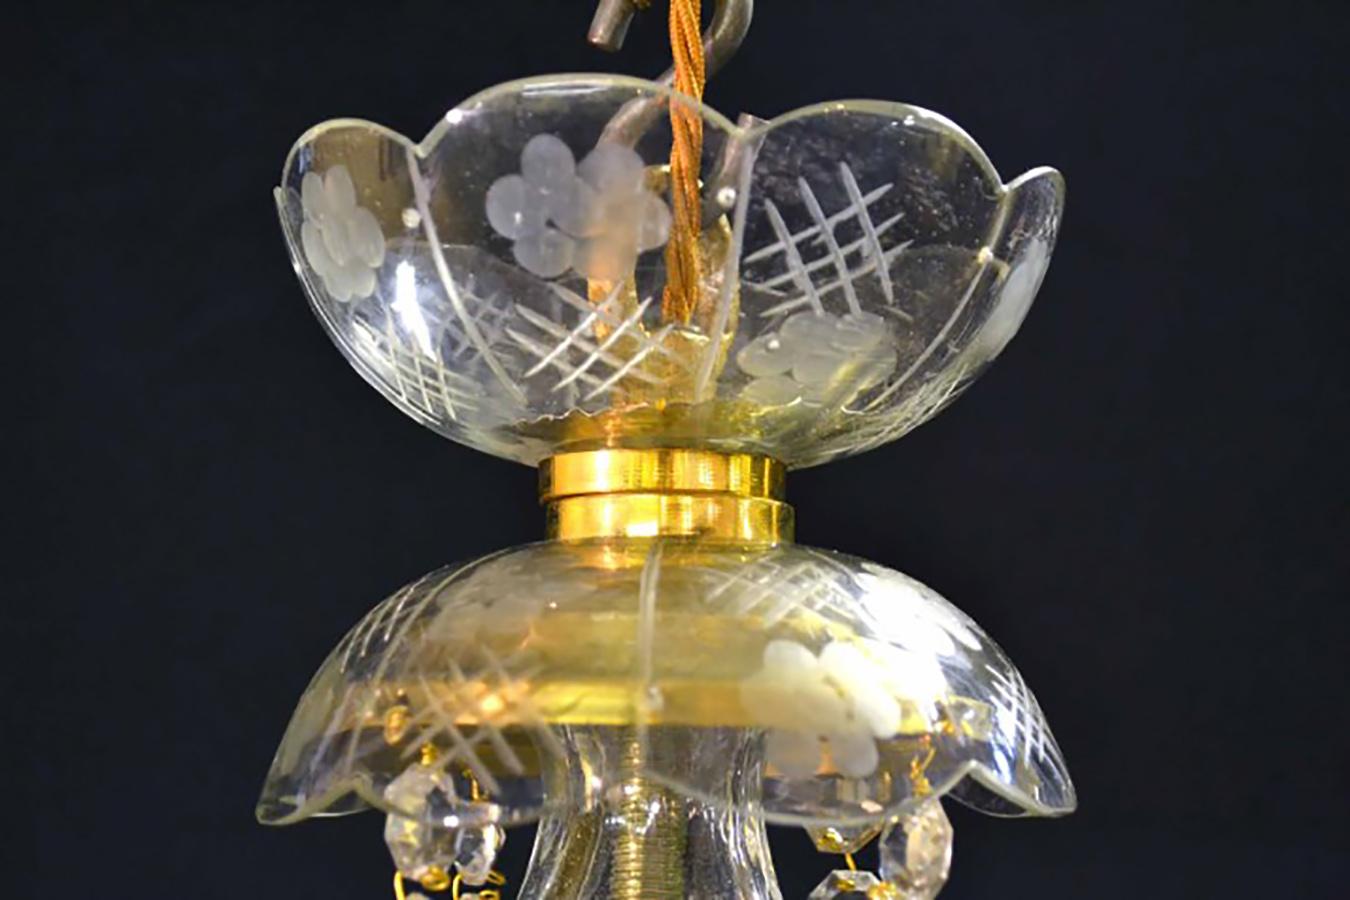 Ein wunderschöner kleiner Kristallkronleuchter im venezianischen Stil mit vier Lichtern und schönen klaren Kristalltropfen, der aus dem letzten Viertel des 20. Jahrhunderts stammt.

Es ist in einem fantastischen Zustand, da es zerlegt, gereinigt und